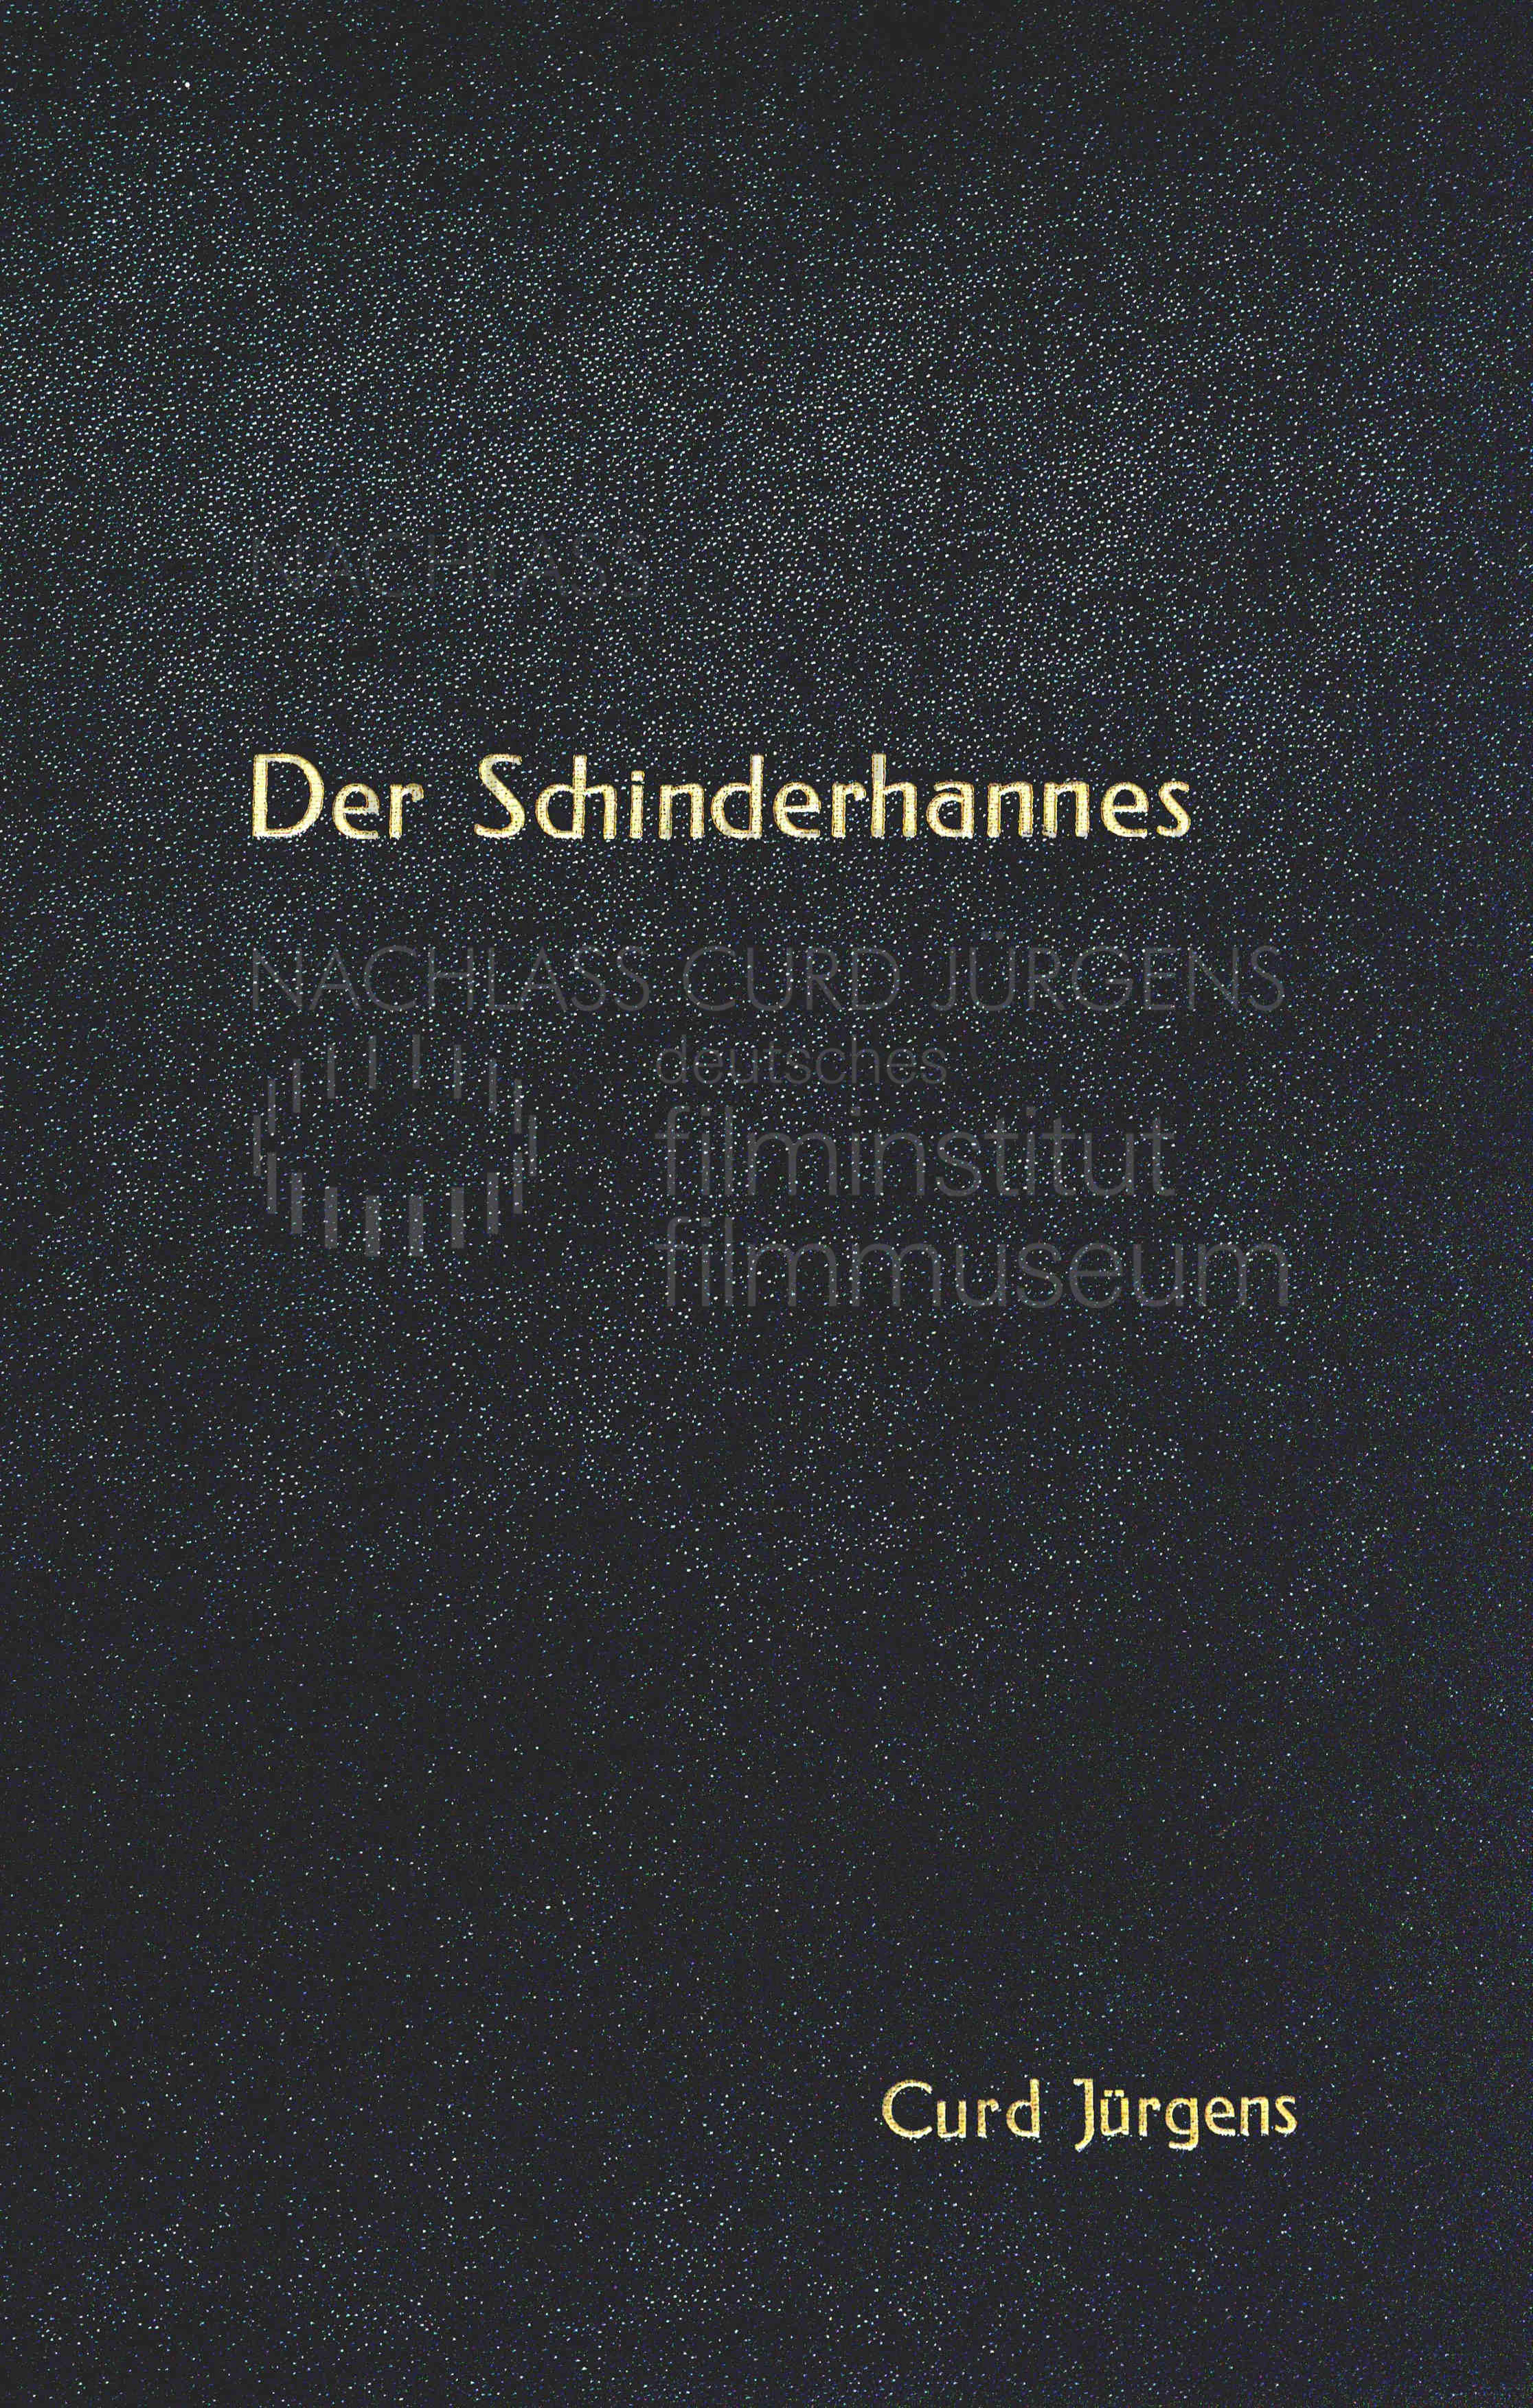 DER SCHINDERHANNES (1958) Drehbuch (Auszug) 1